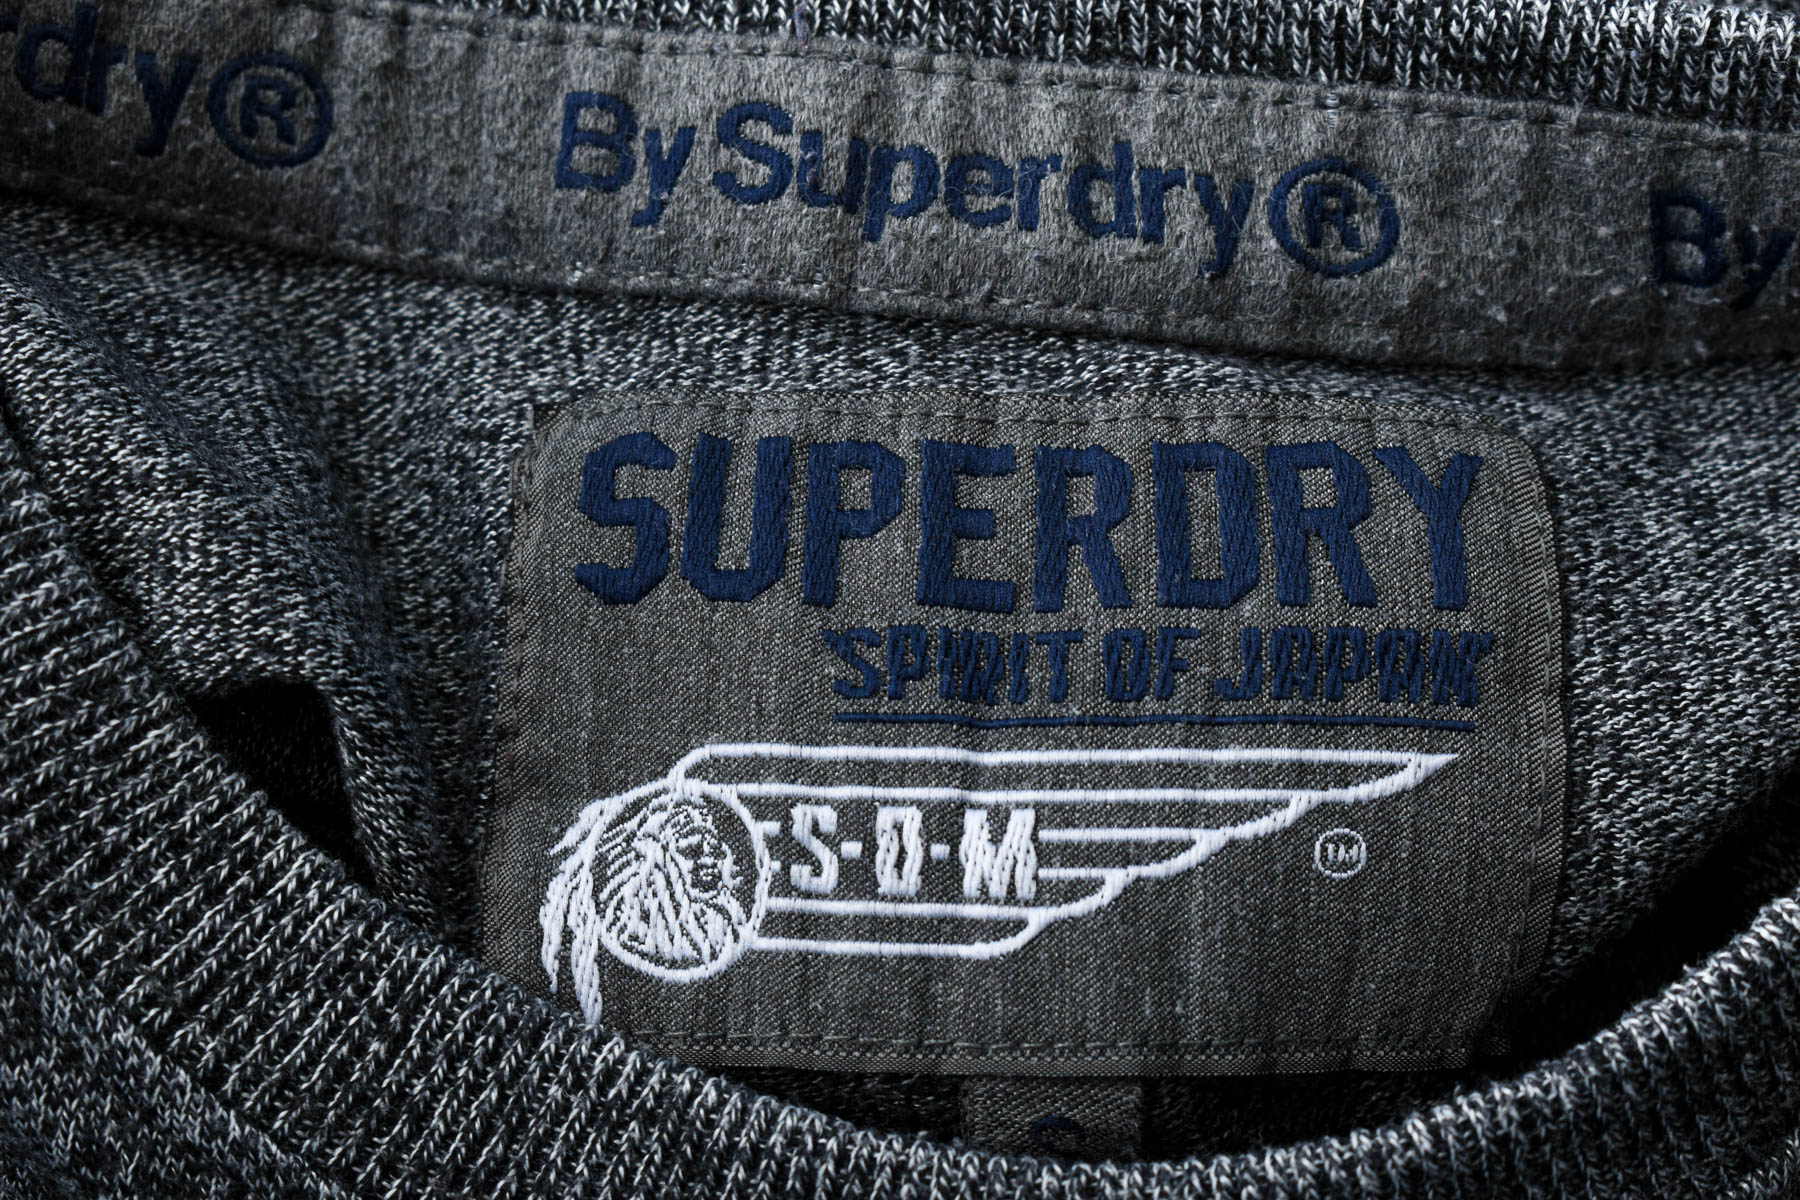 Men's sweater - SuperDry - 2